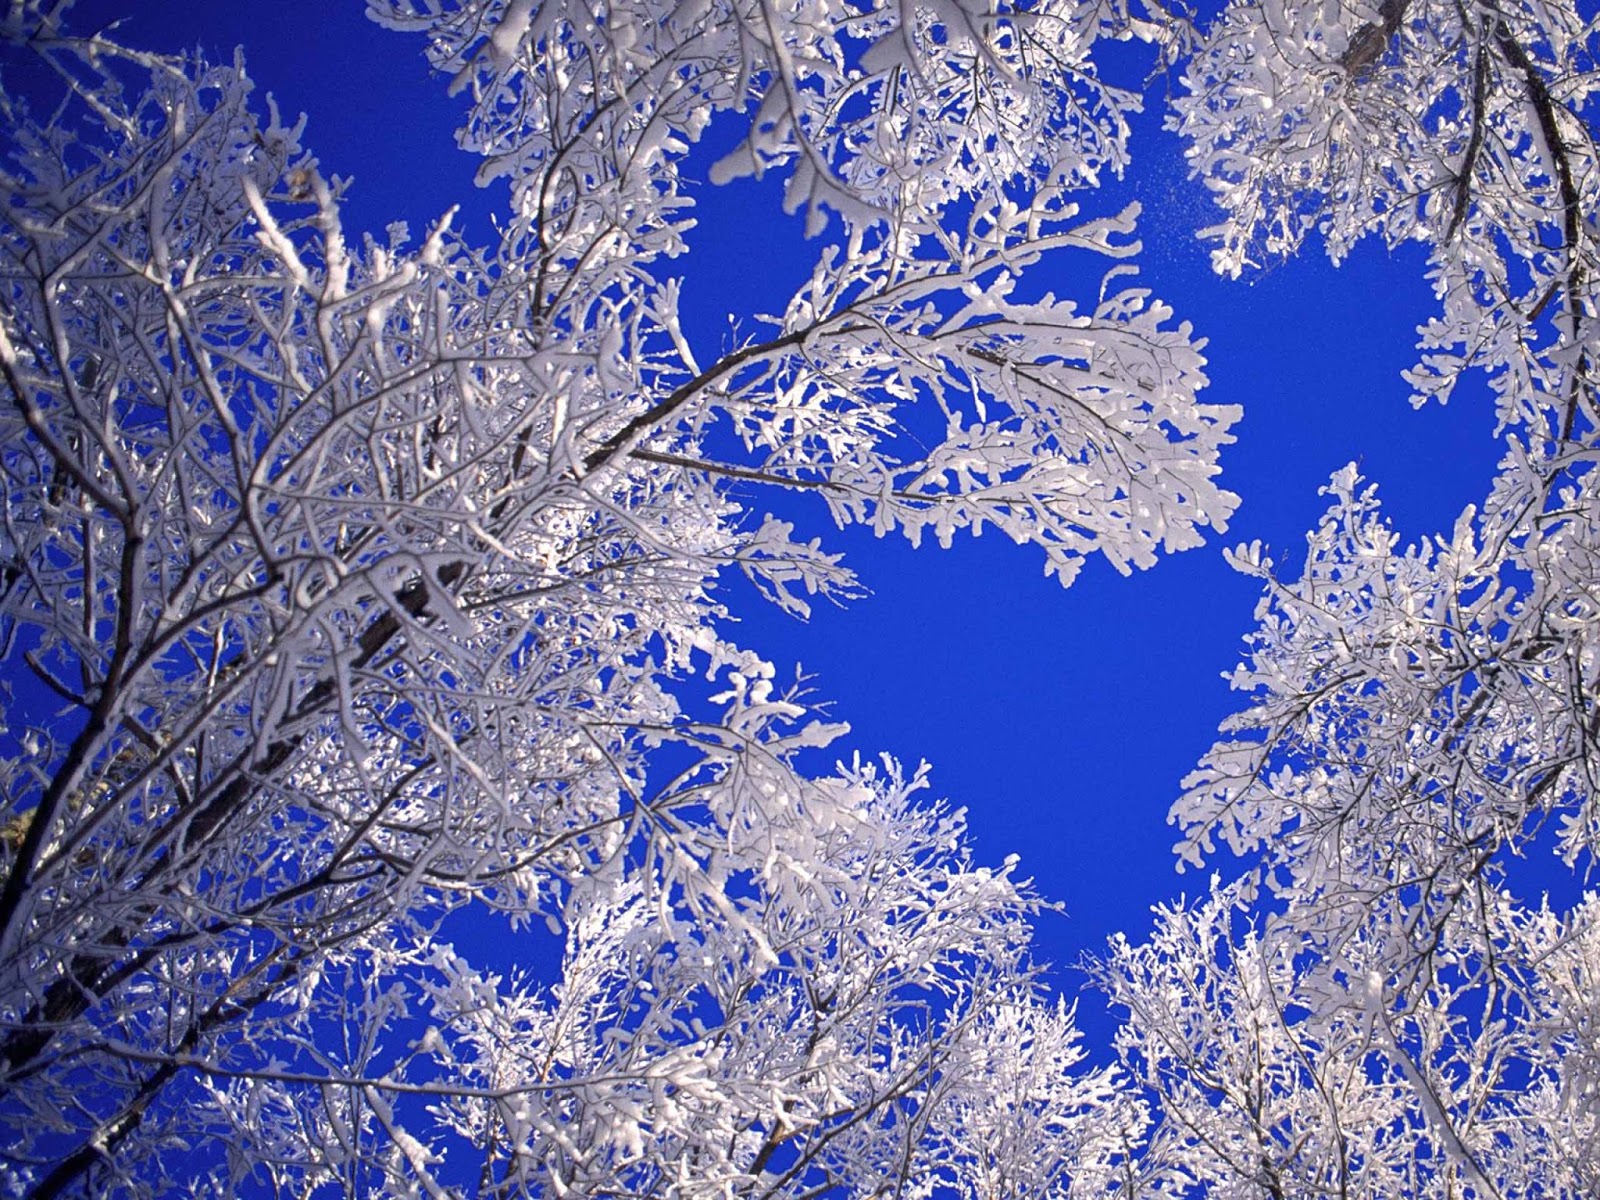 HD Wallpapers: Winter Scenes for Desktop